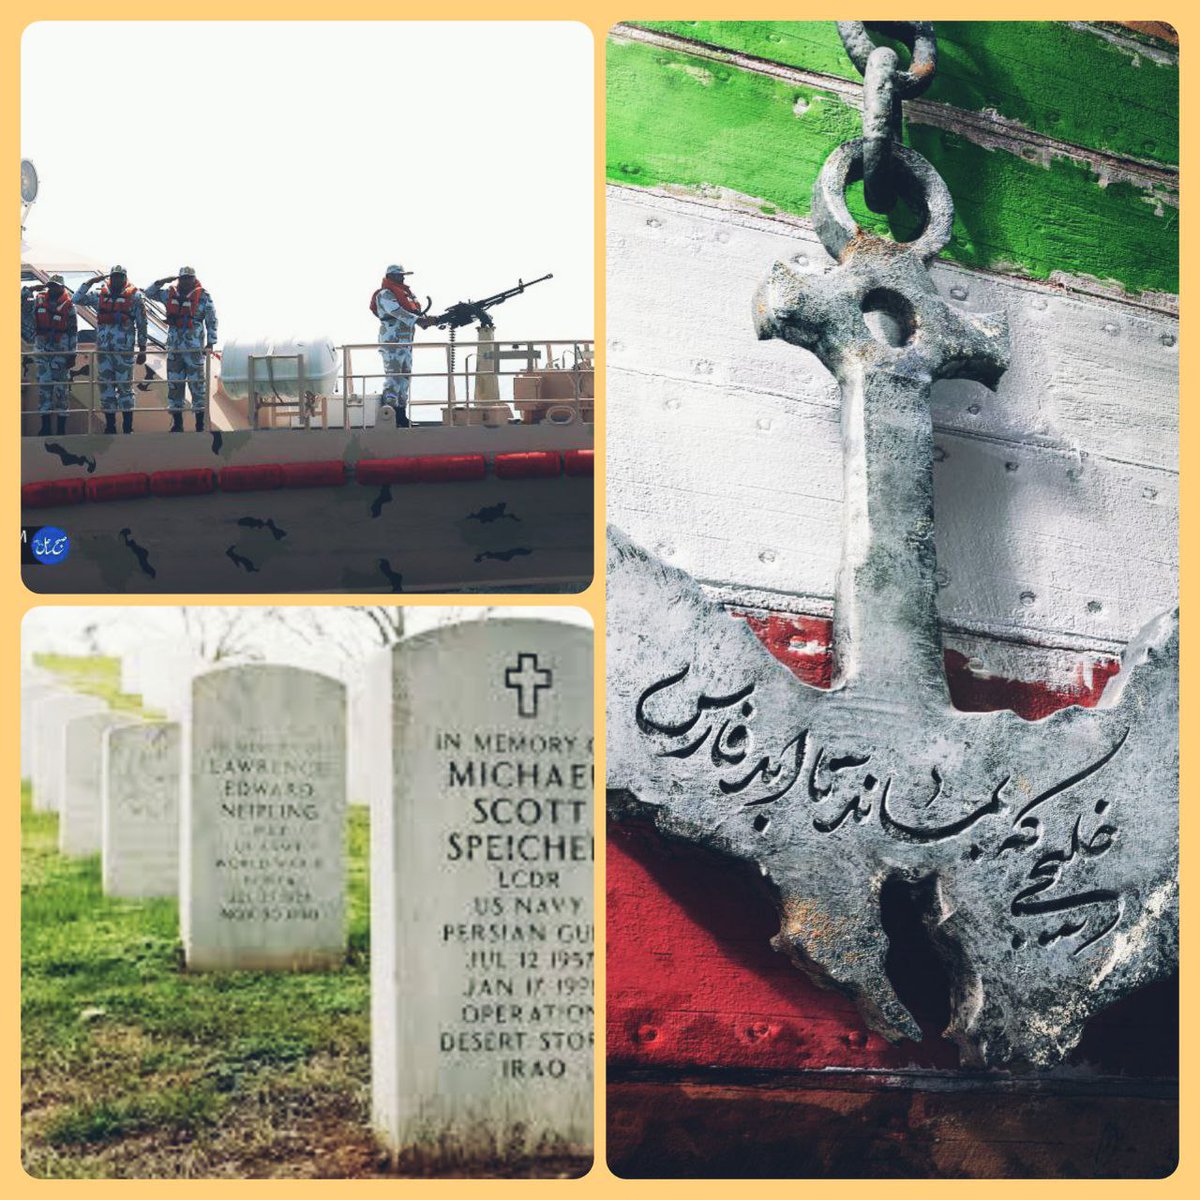 امروز روز خلیج فارسه، یادی کنیم از قبرستان سربازانی که دست تجاوزشون توسط شیران ایرانی از این سرزمین پاک کوتاه شد. #خلیج_فارس #persiangulf